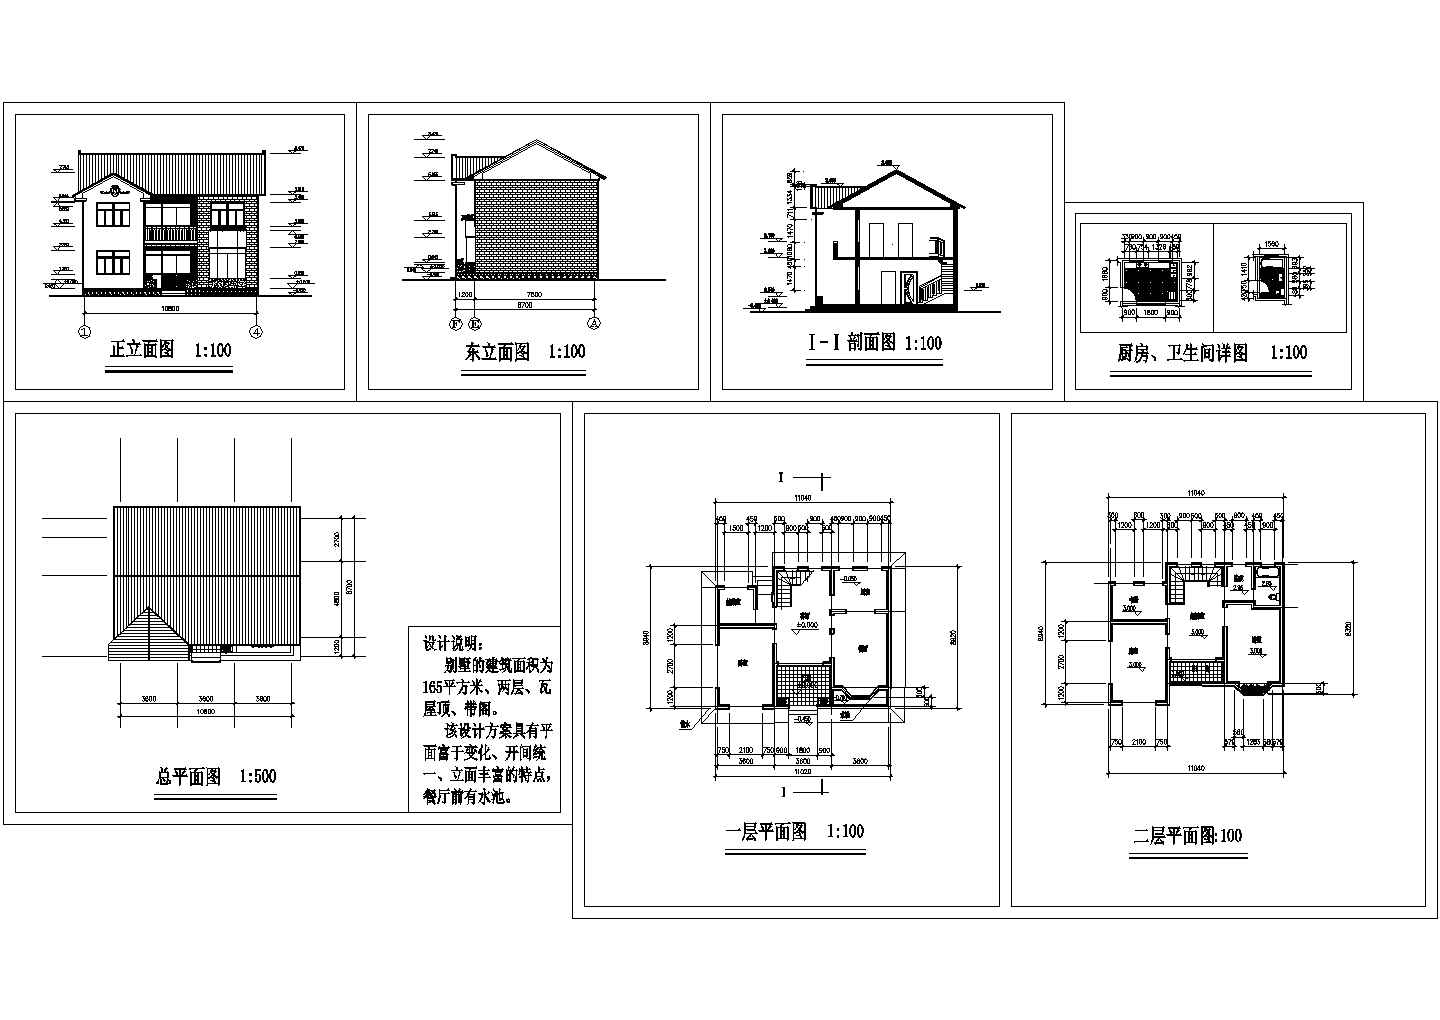 长11米 宽9米 2层165平米简单小别墅设计图【 平立剖 厨房卫生间详图】